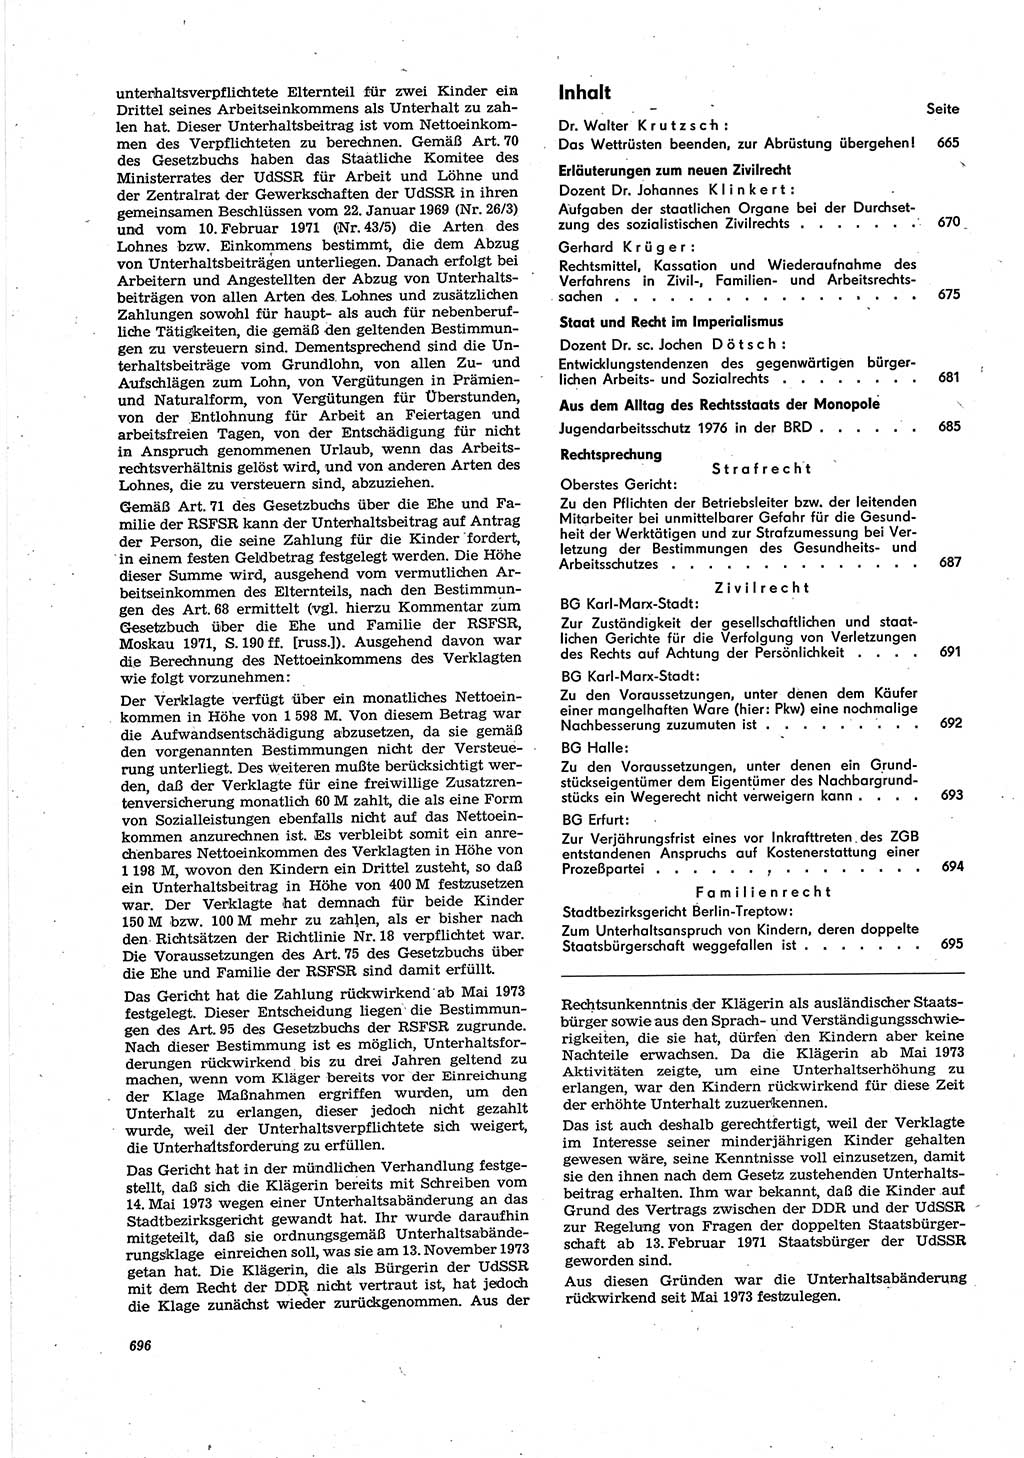 Neue Justiz (NJ), Zeitschrift für Recht und Rechtswissenschaft [Deutsche Demokratische Republik (DDR)], 30. Jahrgang 1976, Seite 696 (NJ DDR 1976, S. 696)